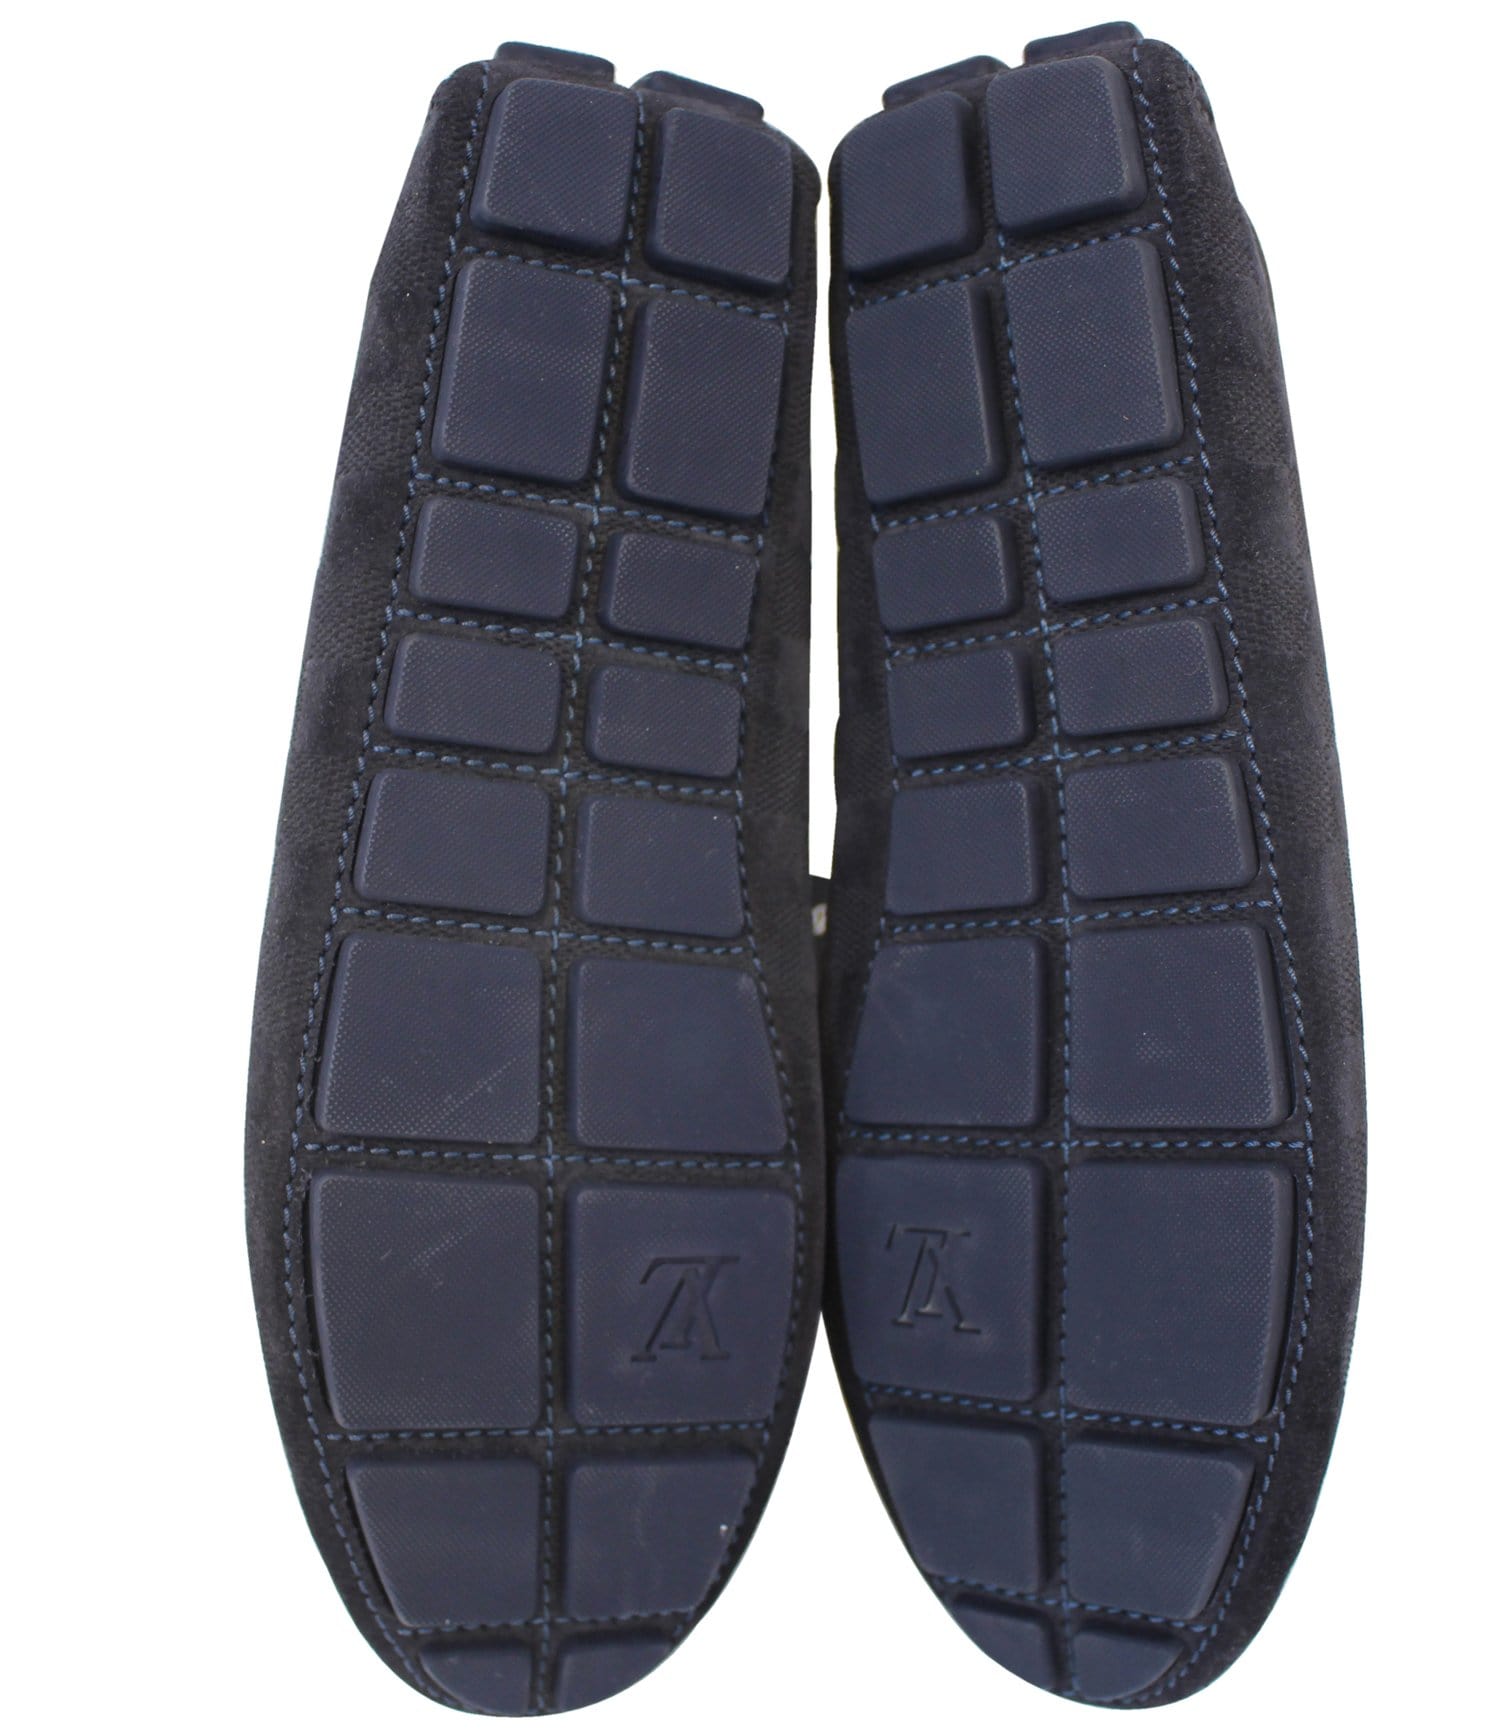 Louis Vuitton - Hockenheim Moccasins - Black - Men - Size: 08 - Luxury